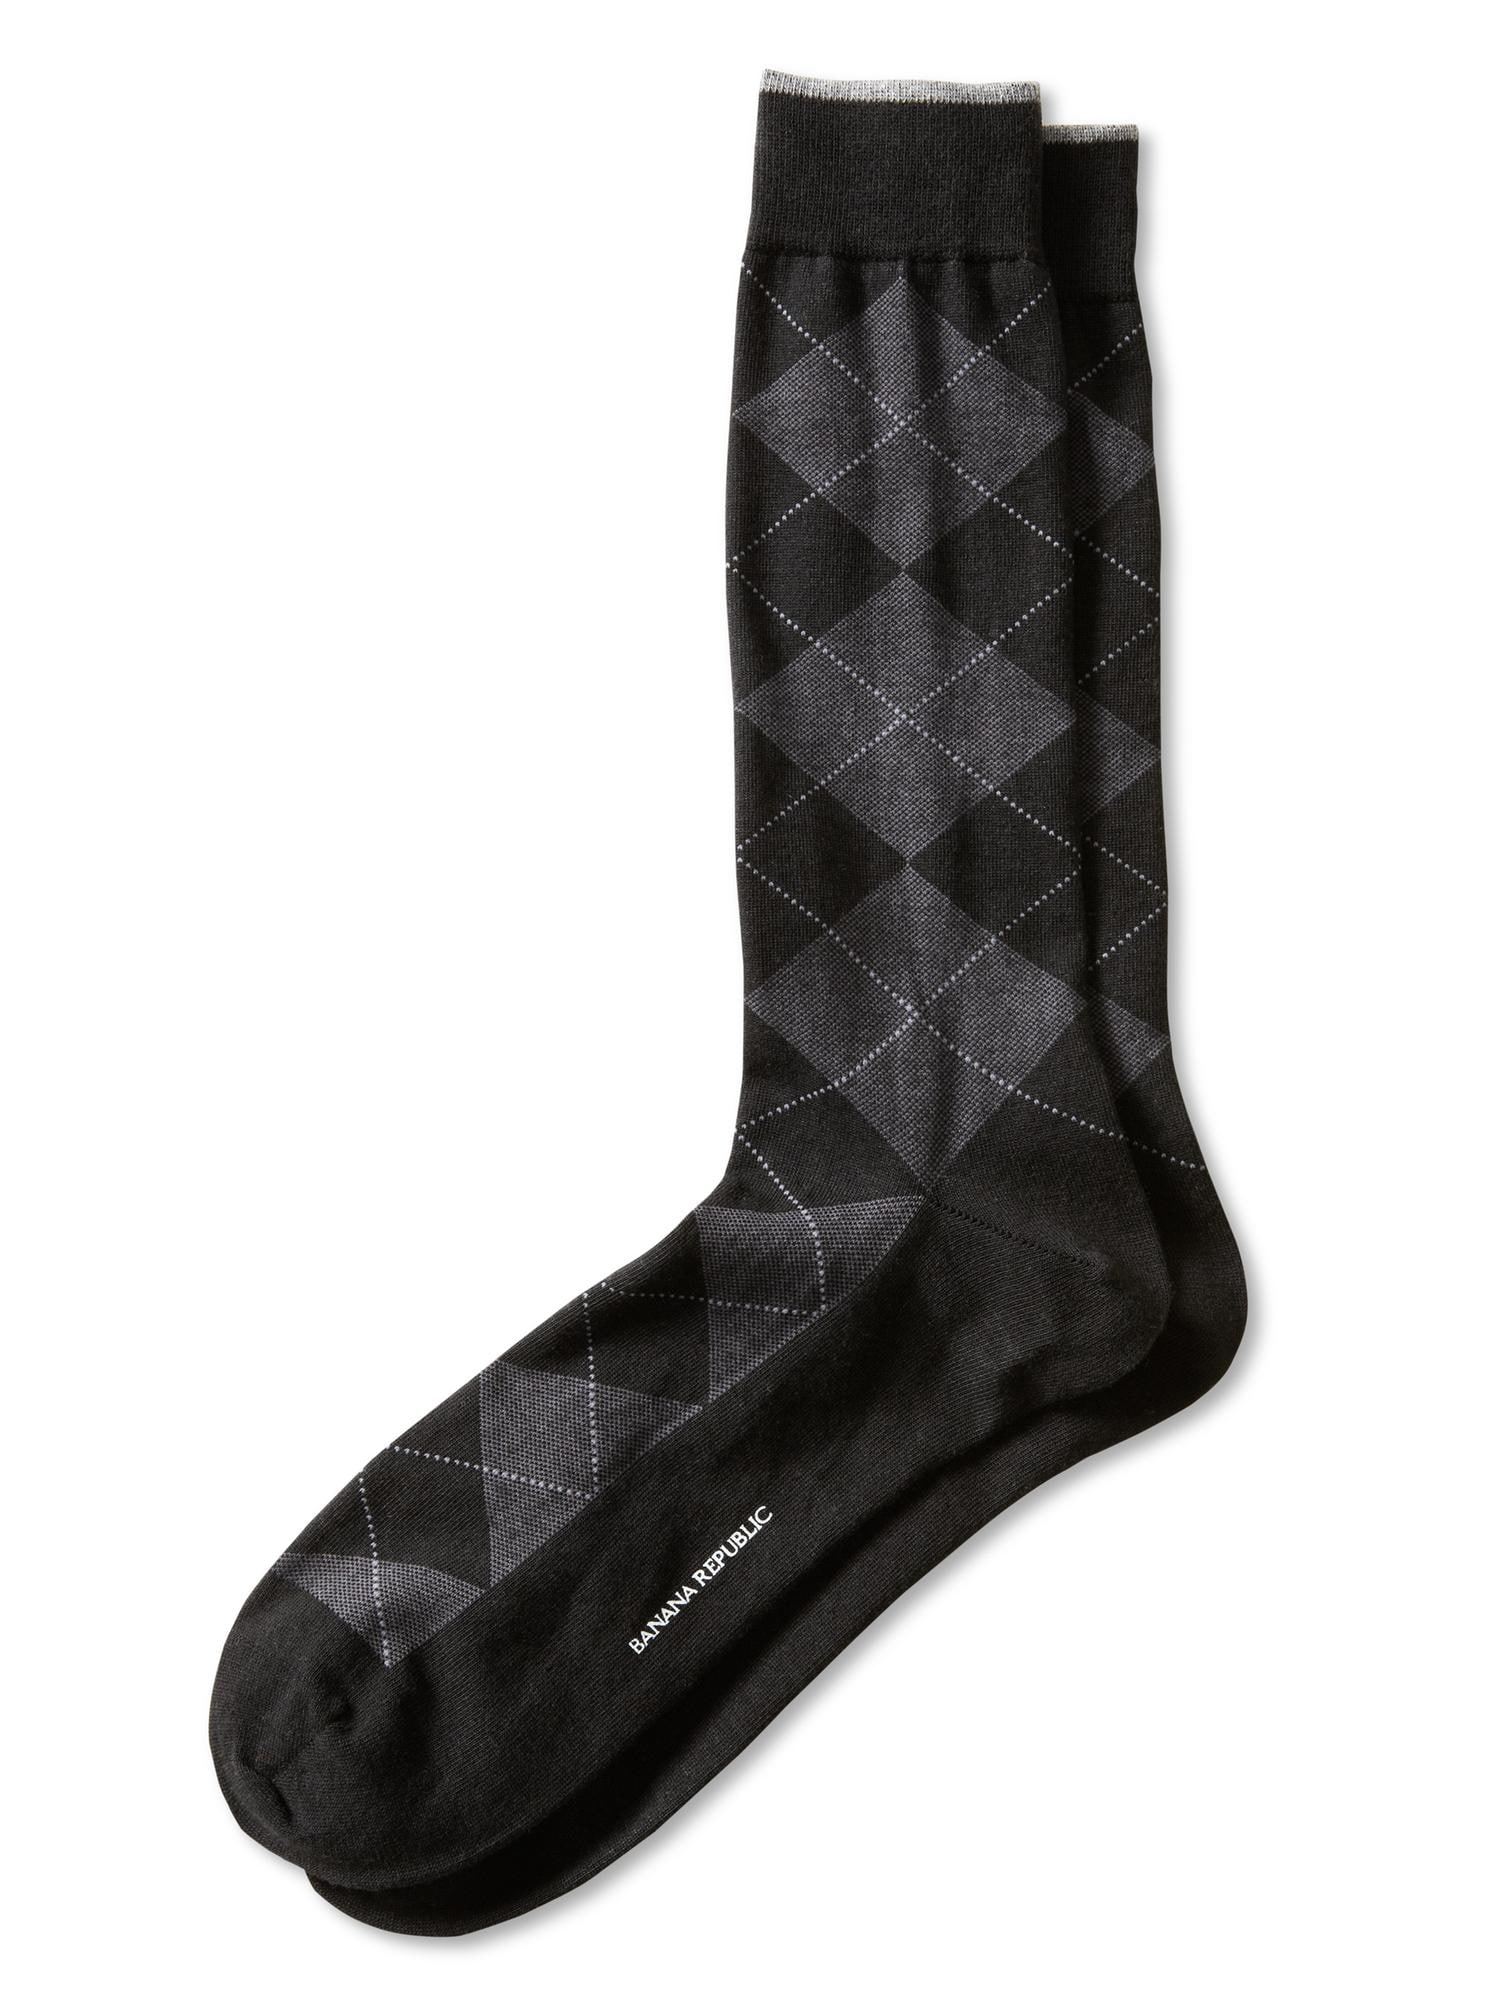 Luxe argyle sock